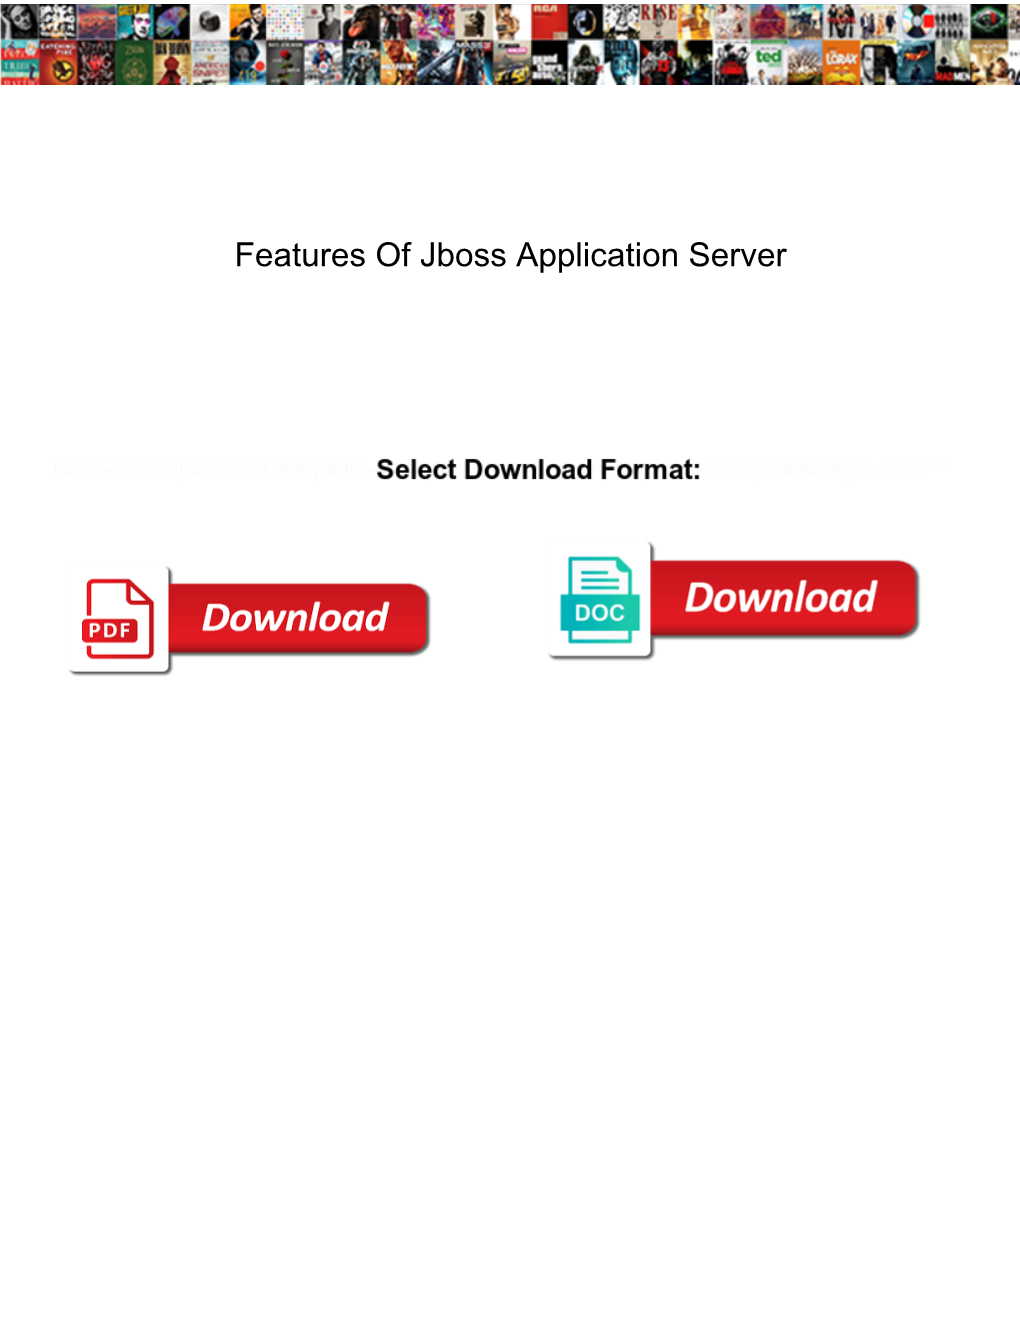 Features of Jboss Application Server